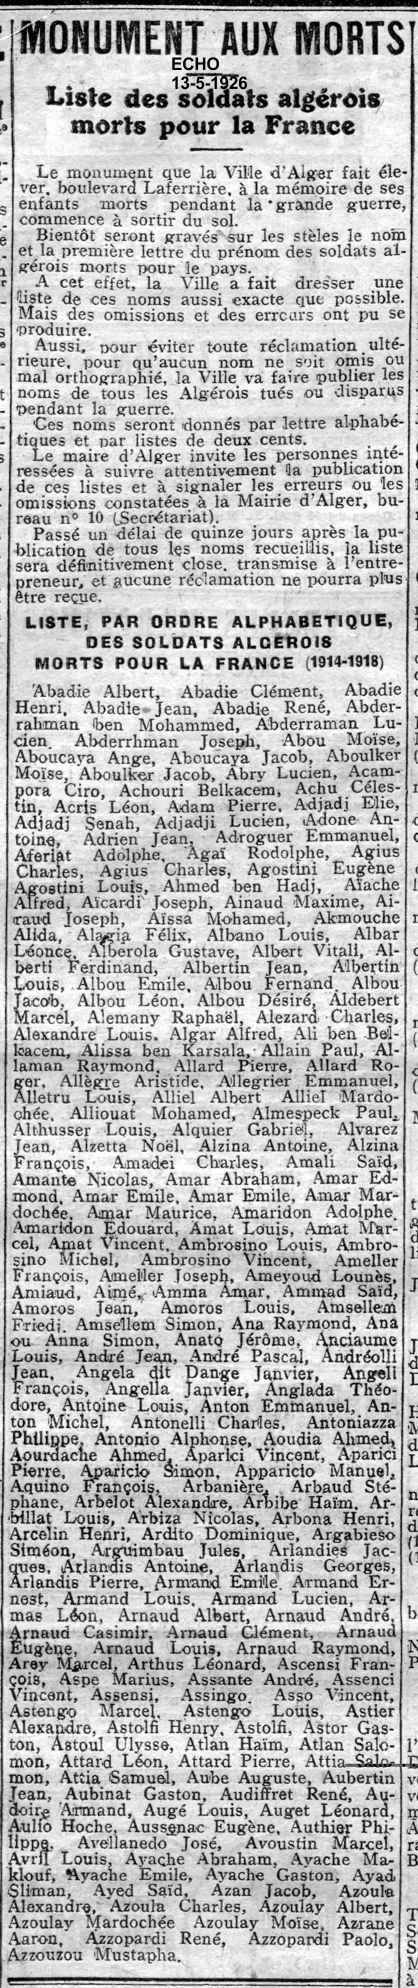 LISTE, PAR ORDRE ALPHABETIQUE, DES SOLDATS ALGEROIS MORTS POUR LA FRANCE (1914-1918)